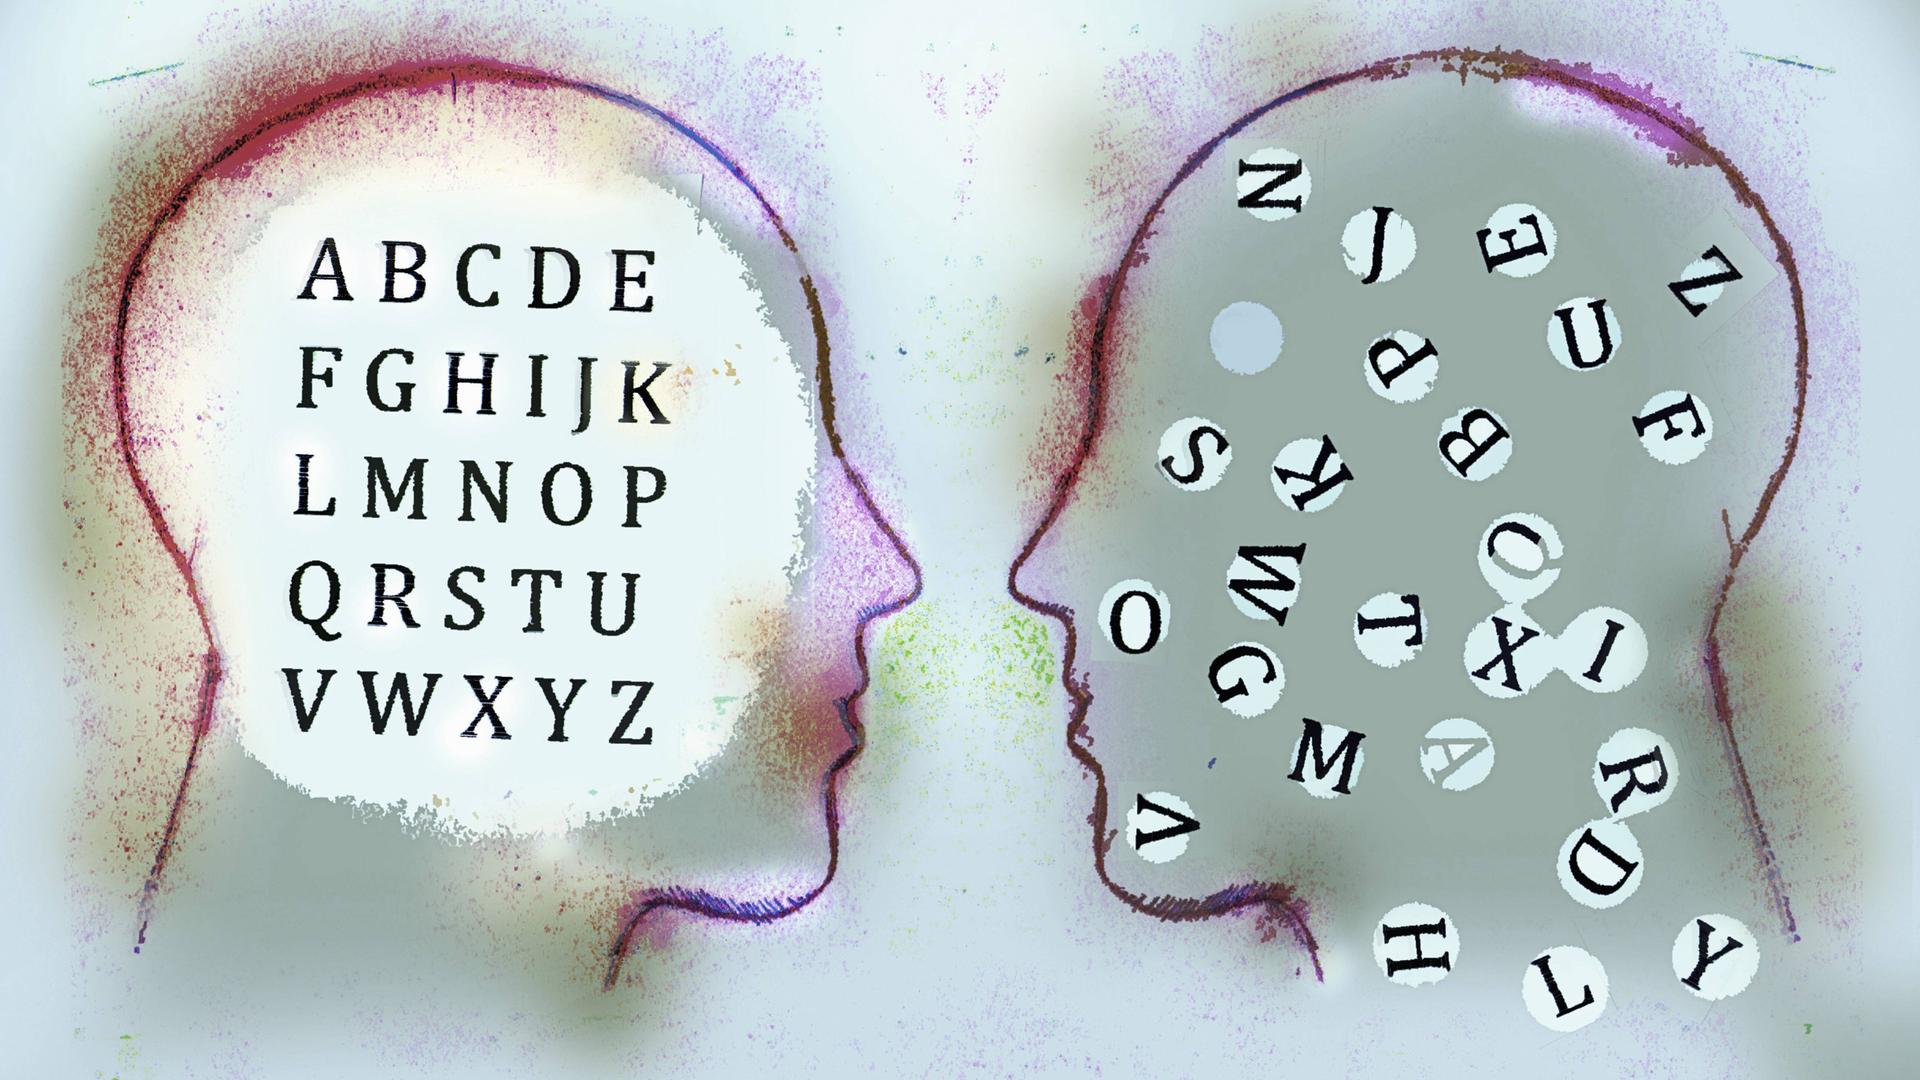 Illustration zweier zugewandter Köpfe: In einem Kopf sind die Buchstaben des Alphabets in korrekter Reihenfolge aufgeführt, im anderen Kopf fliegen alle Buchstaben durcheinander.